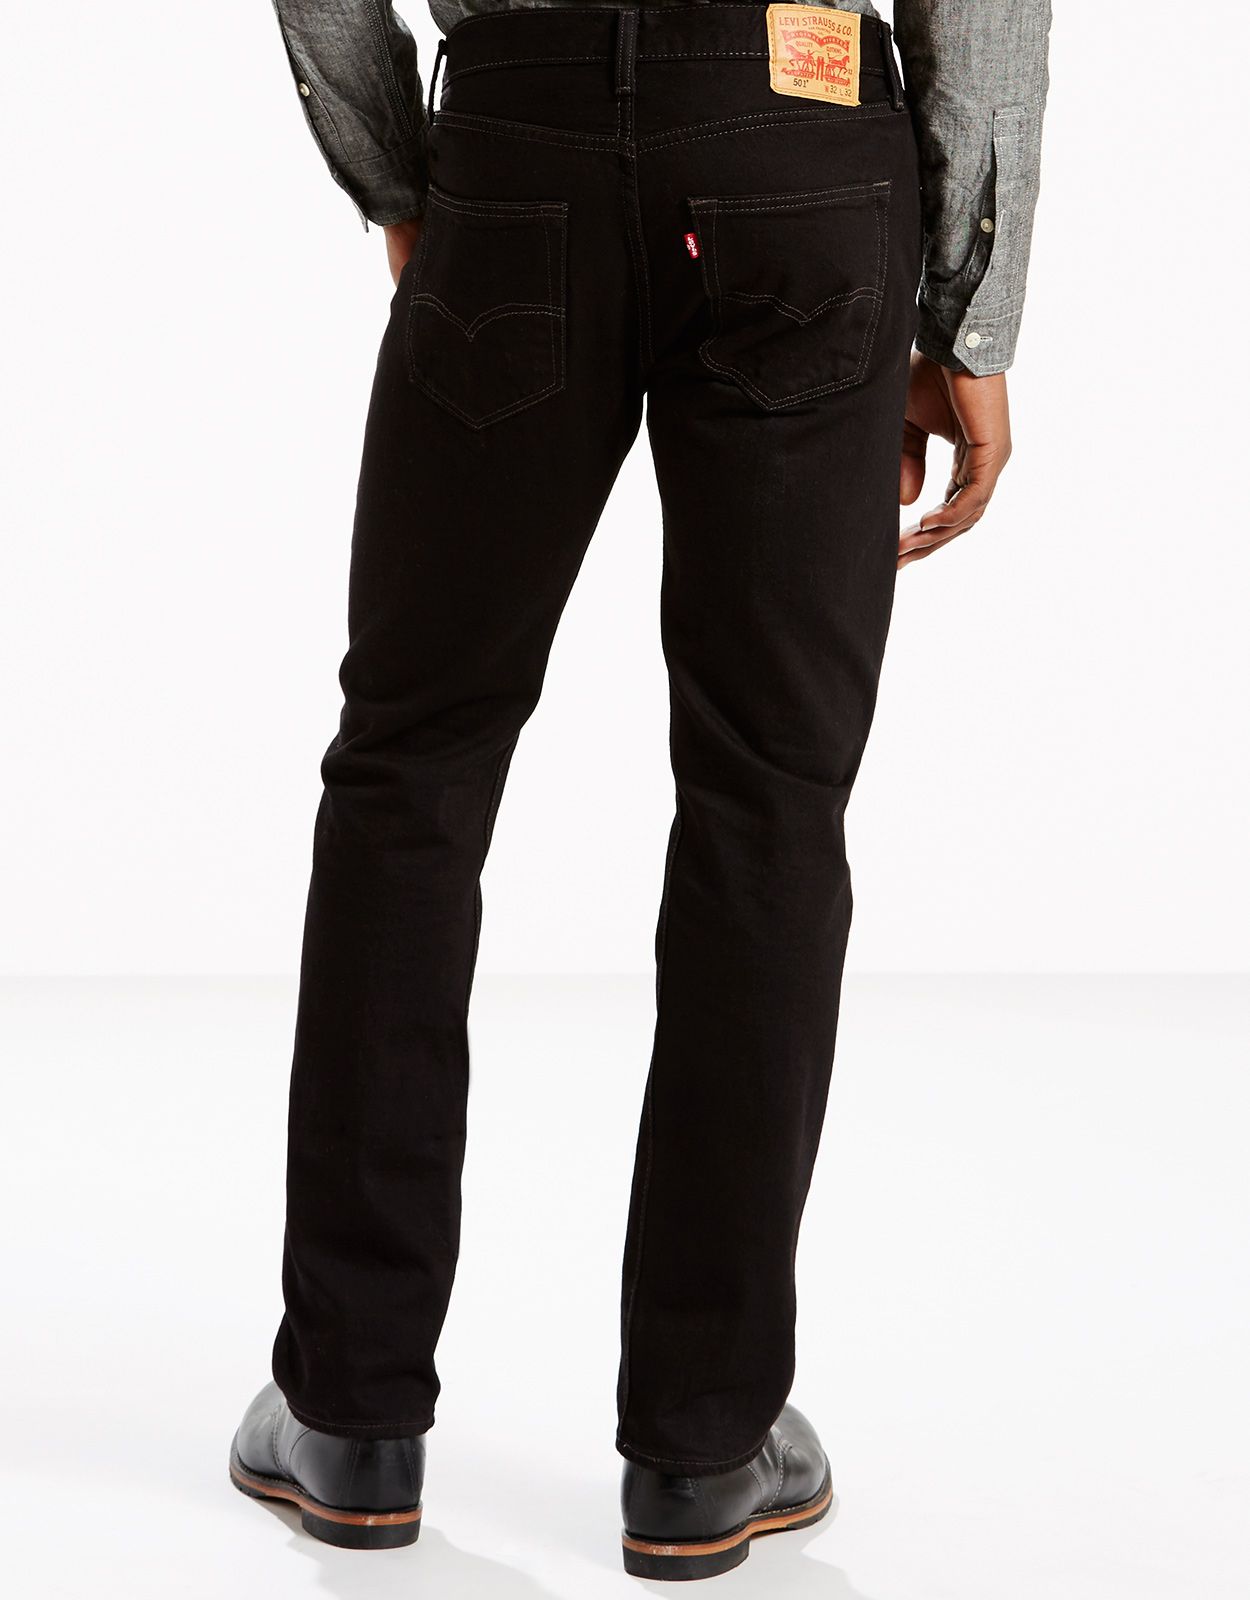 Descendencia Parecer ignorancia Levi's Men's 501 Original Mid Rise Regular Fit Straight Leg Jeans - Black